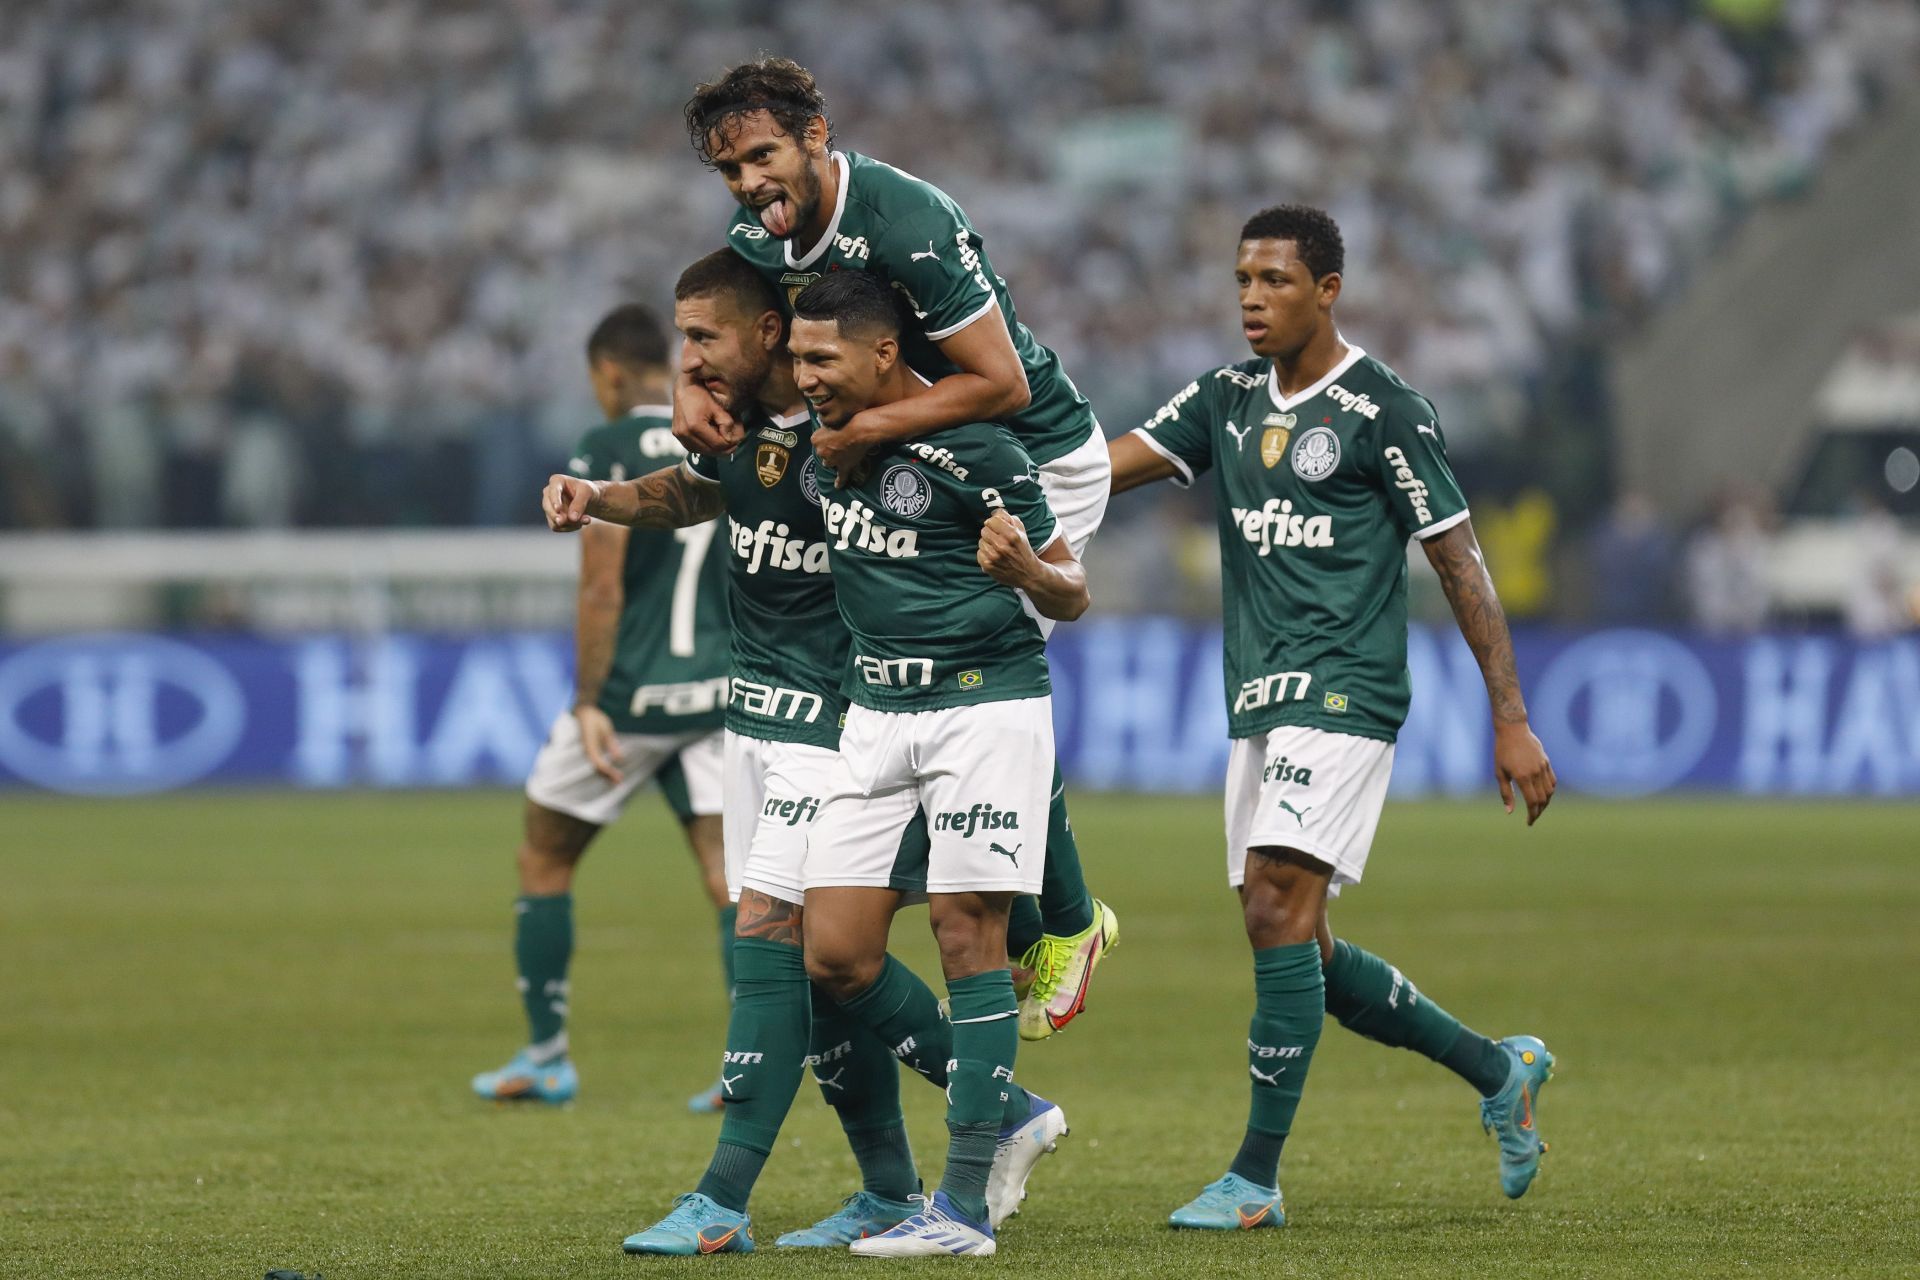 Palmeiras have a comfortable lead in the aggregate score against Cerro Porteno